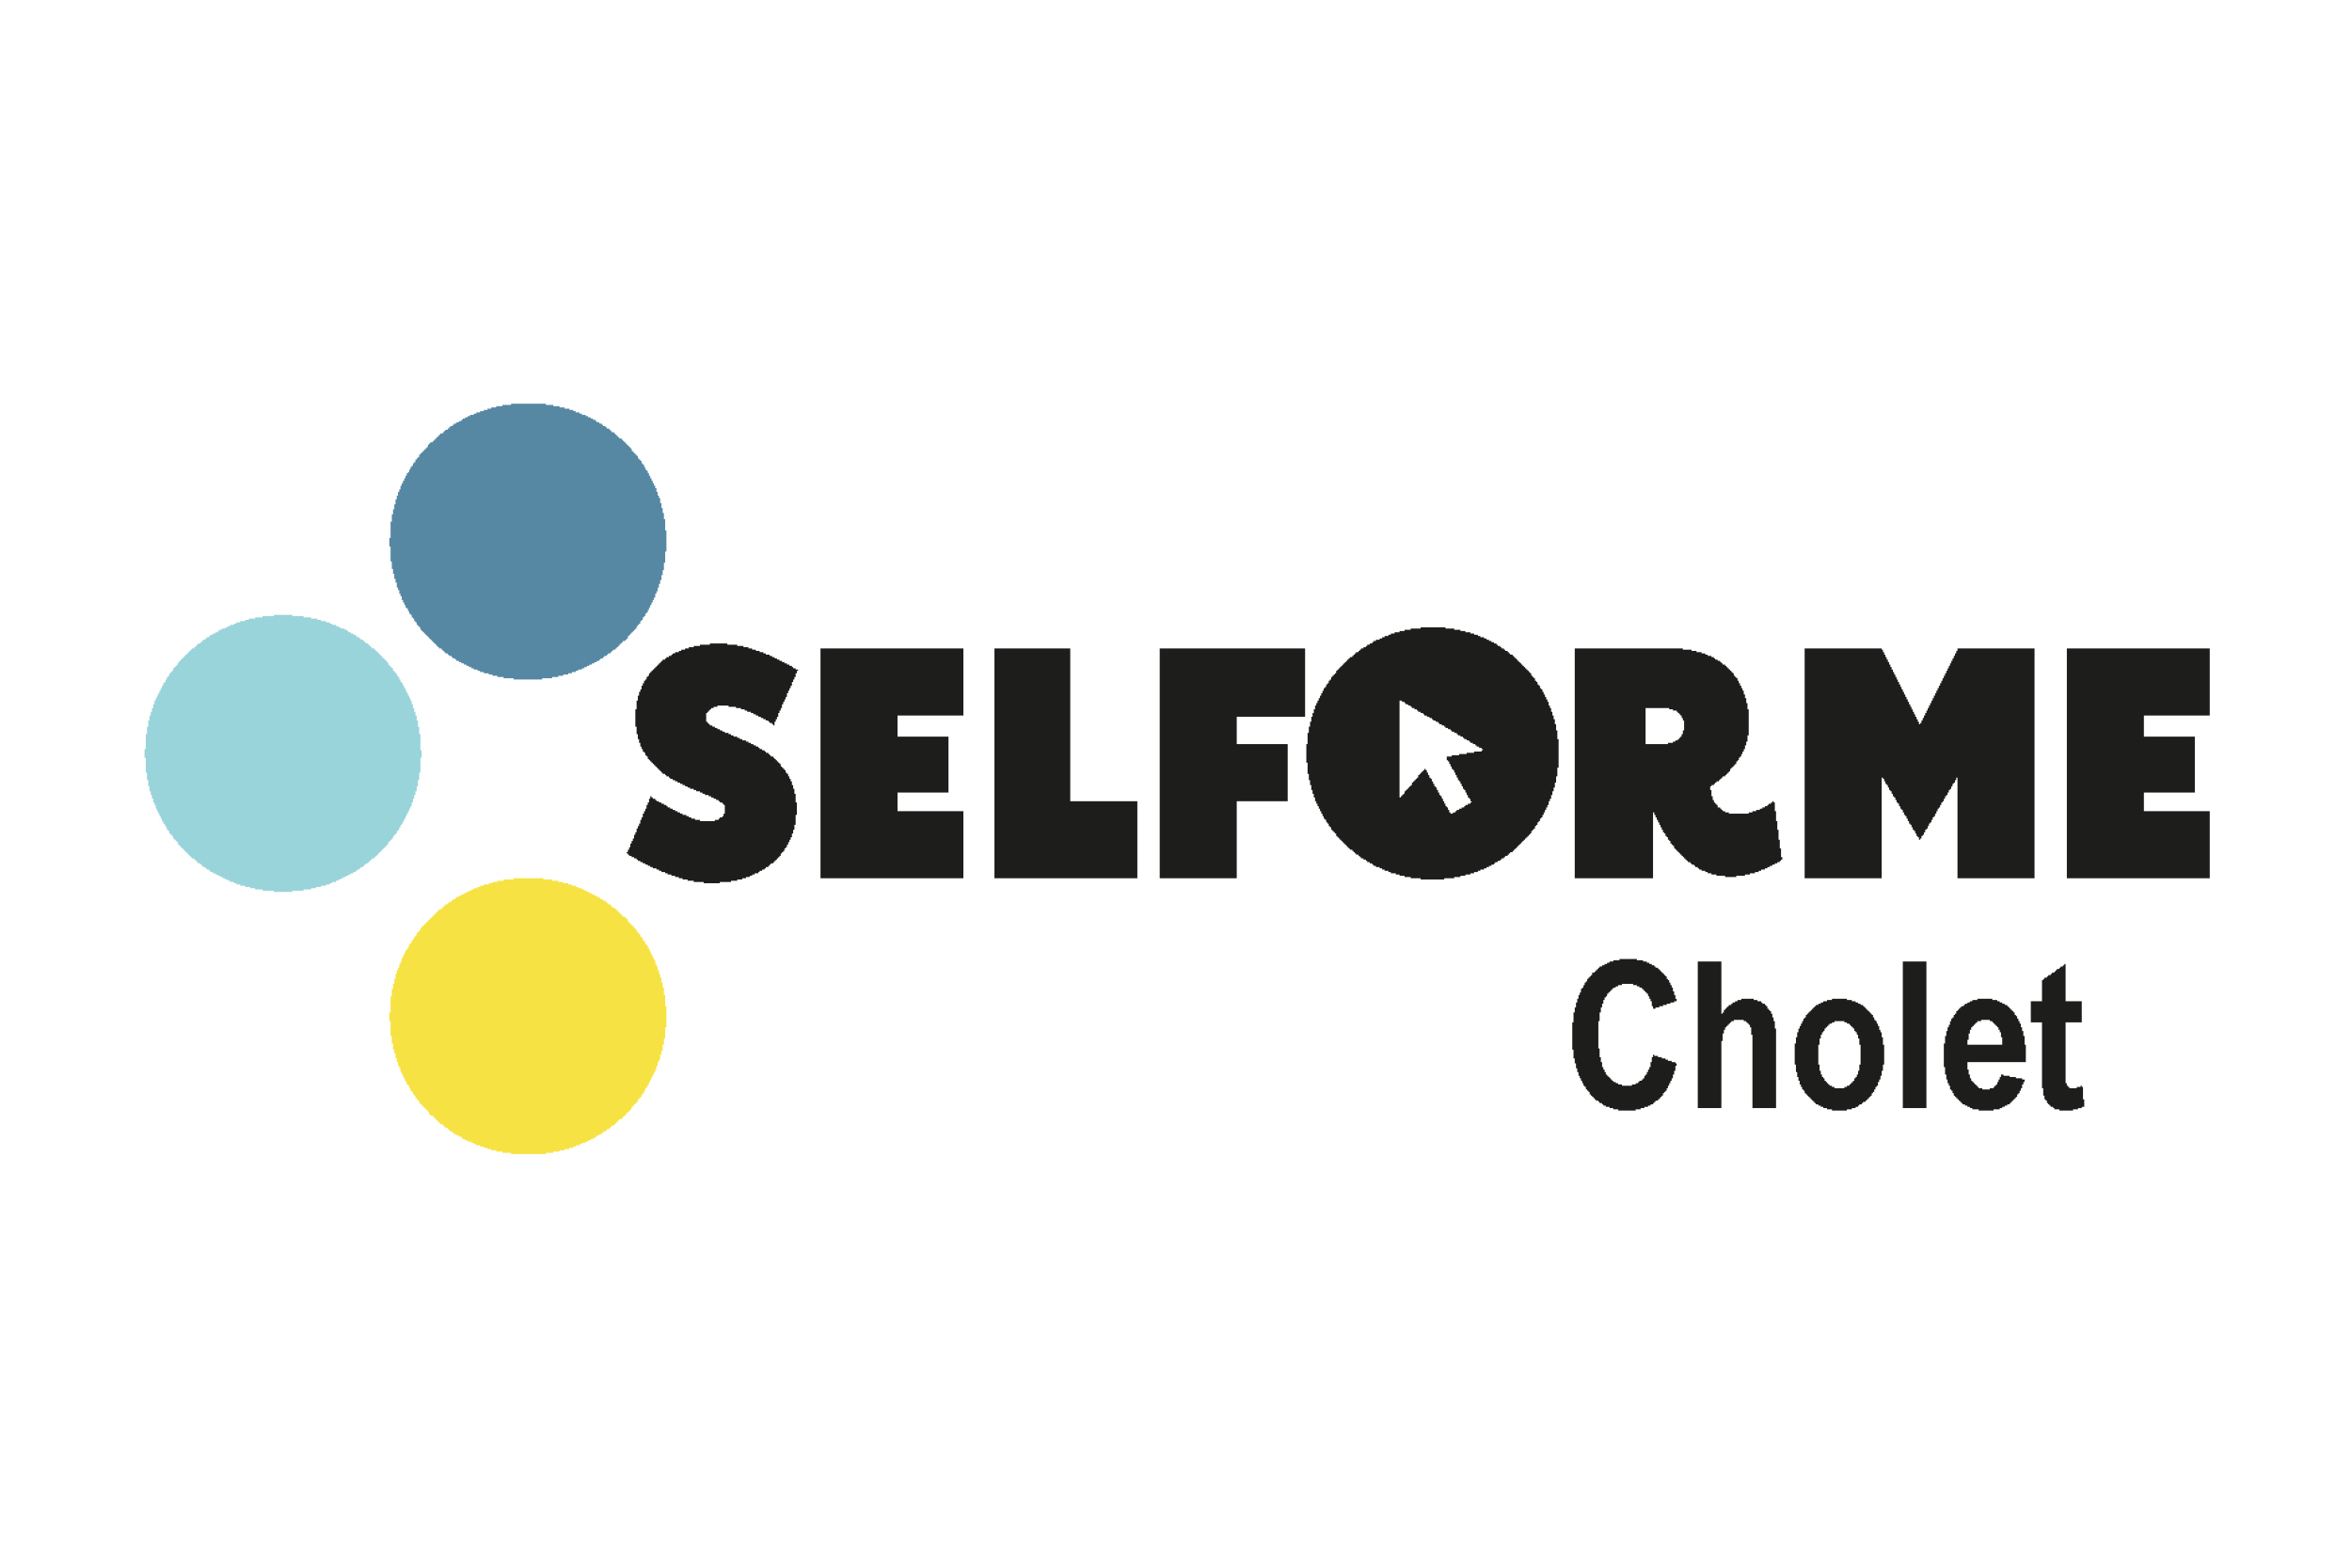 Selforme Cholet